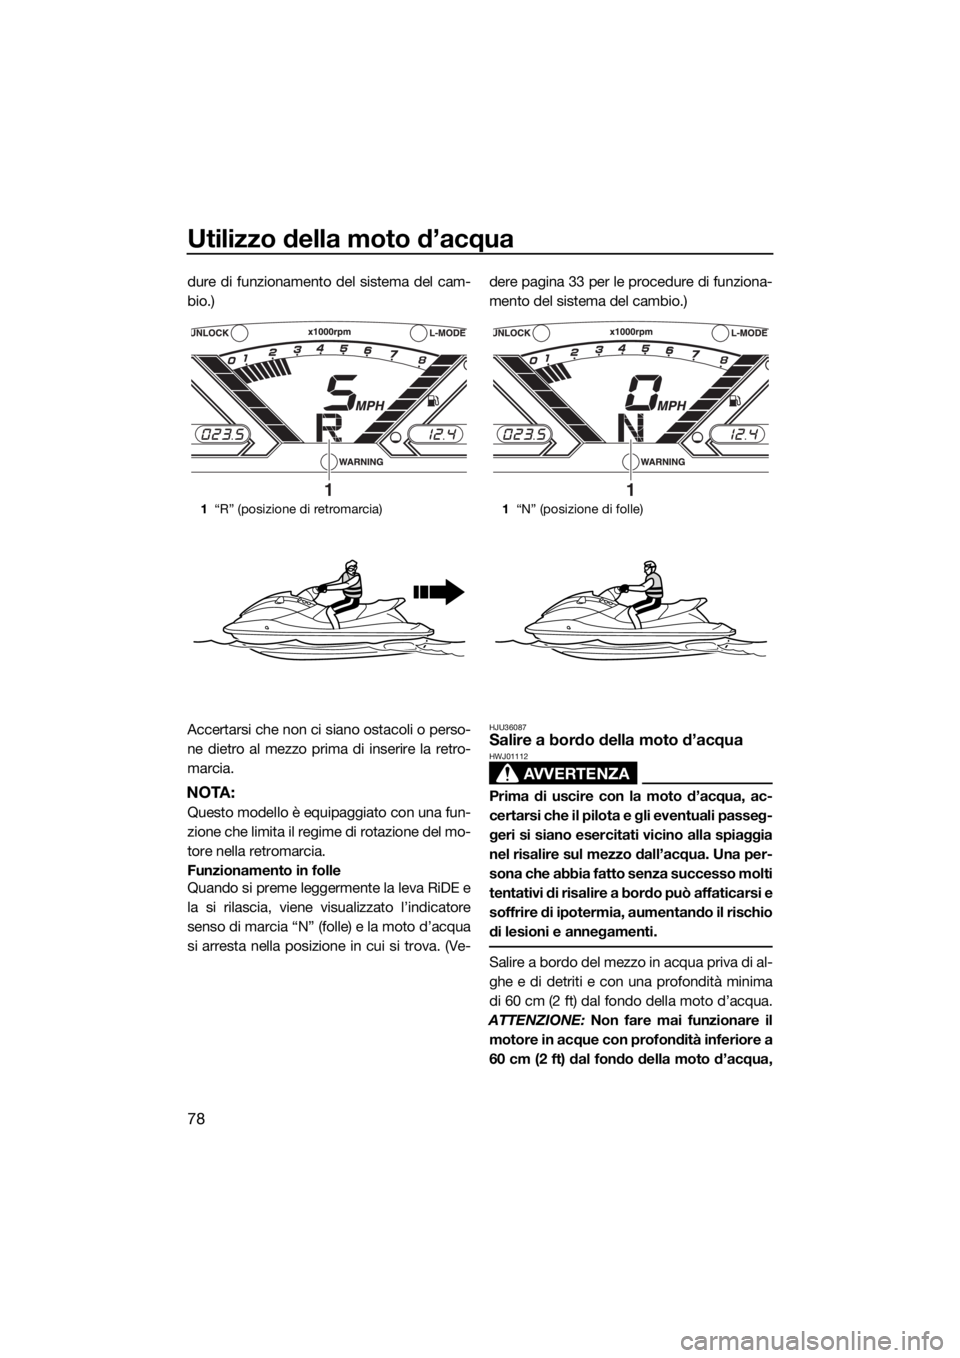 YAMAHA VX 2019  Manuale duso (in Italian) Utilizzo della moto d’acqua
78
dure di funzionamento del sistema del cam-
bio.)
Accertarsi che non ci siano ostacoli o perso-
ne dietro al mezzo prima di inserire la retro-
marcia.
NOTA:
Questo mode